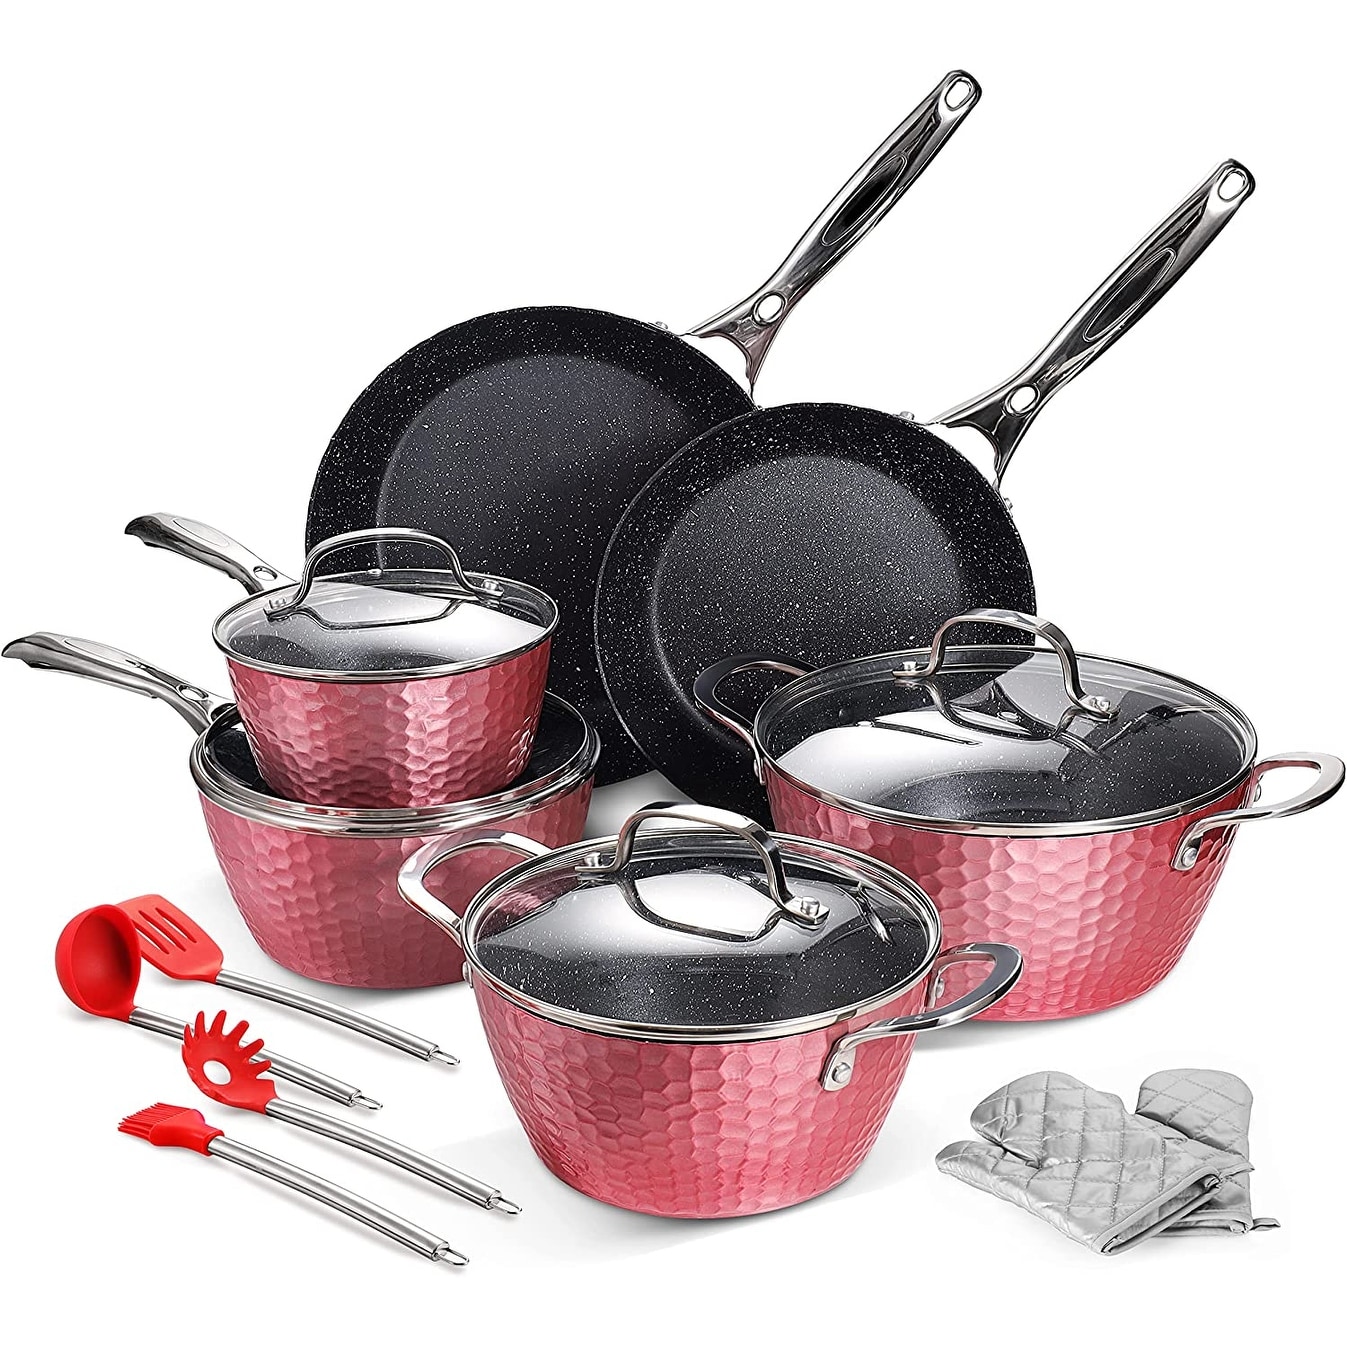 Pots and Pans Set, Cookware Copper Pan Set, Nonstick Ceramic Coating, Saute  Pan, Saucepan Stockpot with Lid, Fry Pan, 10pcs